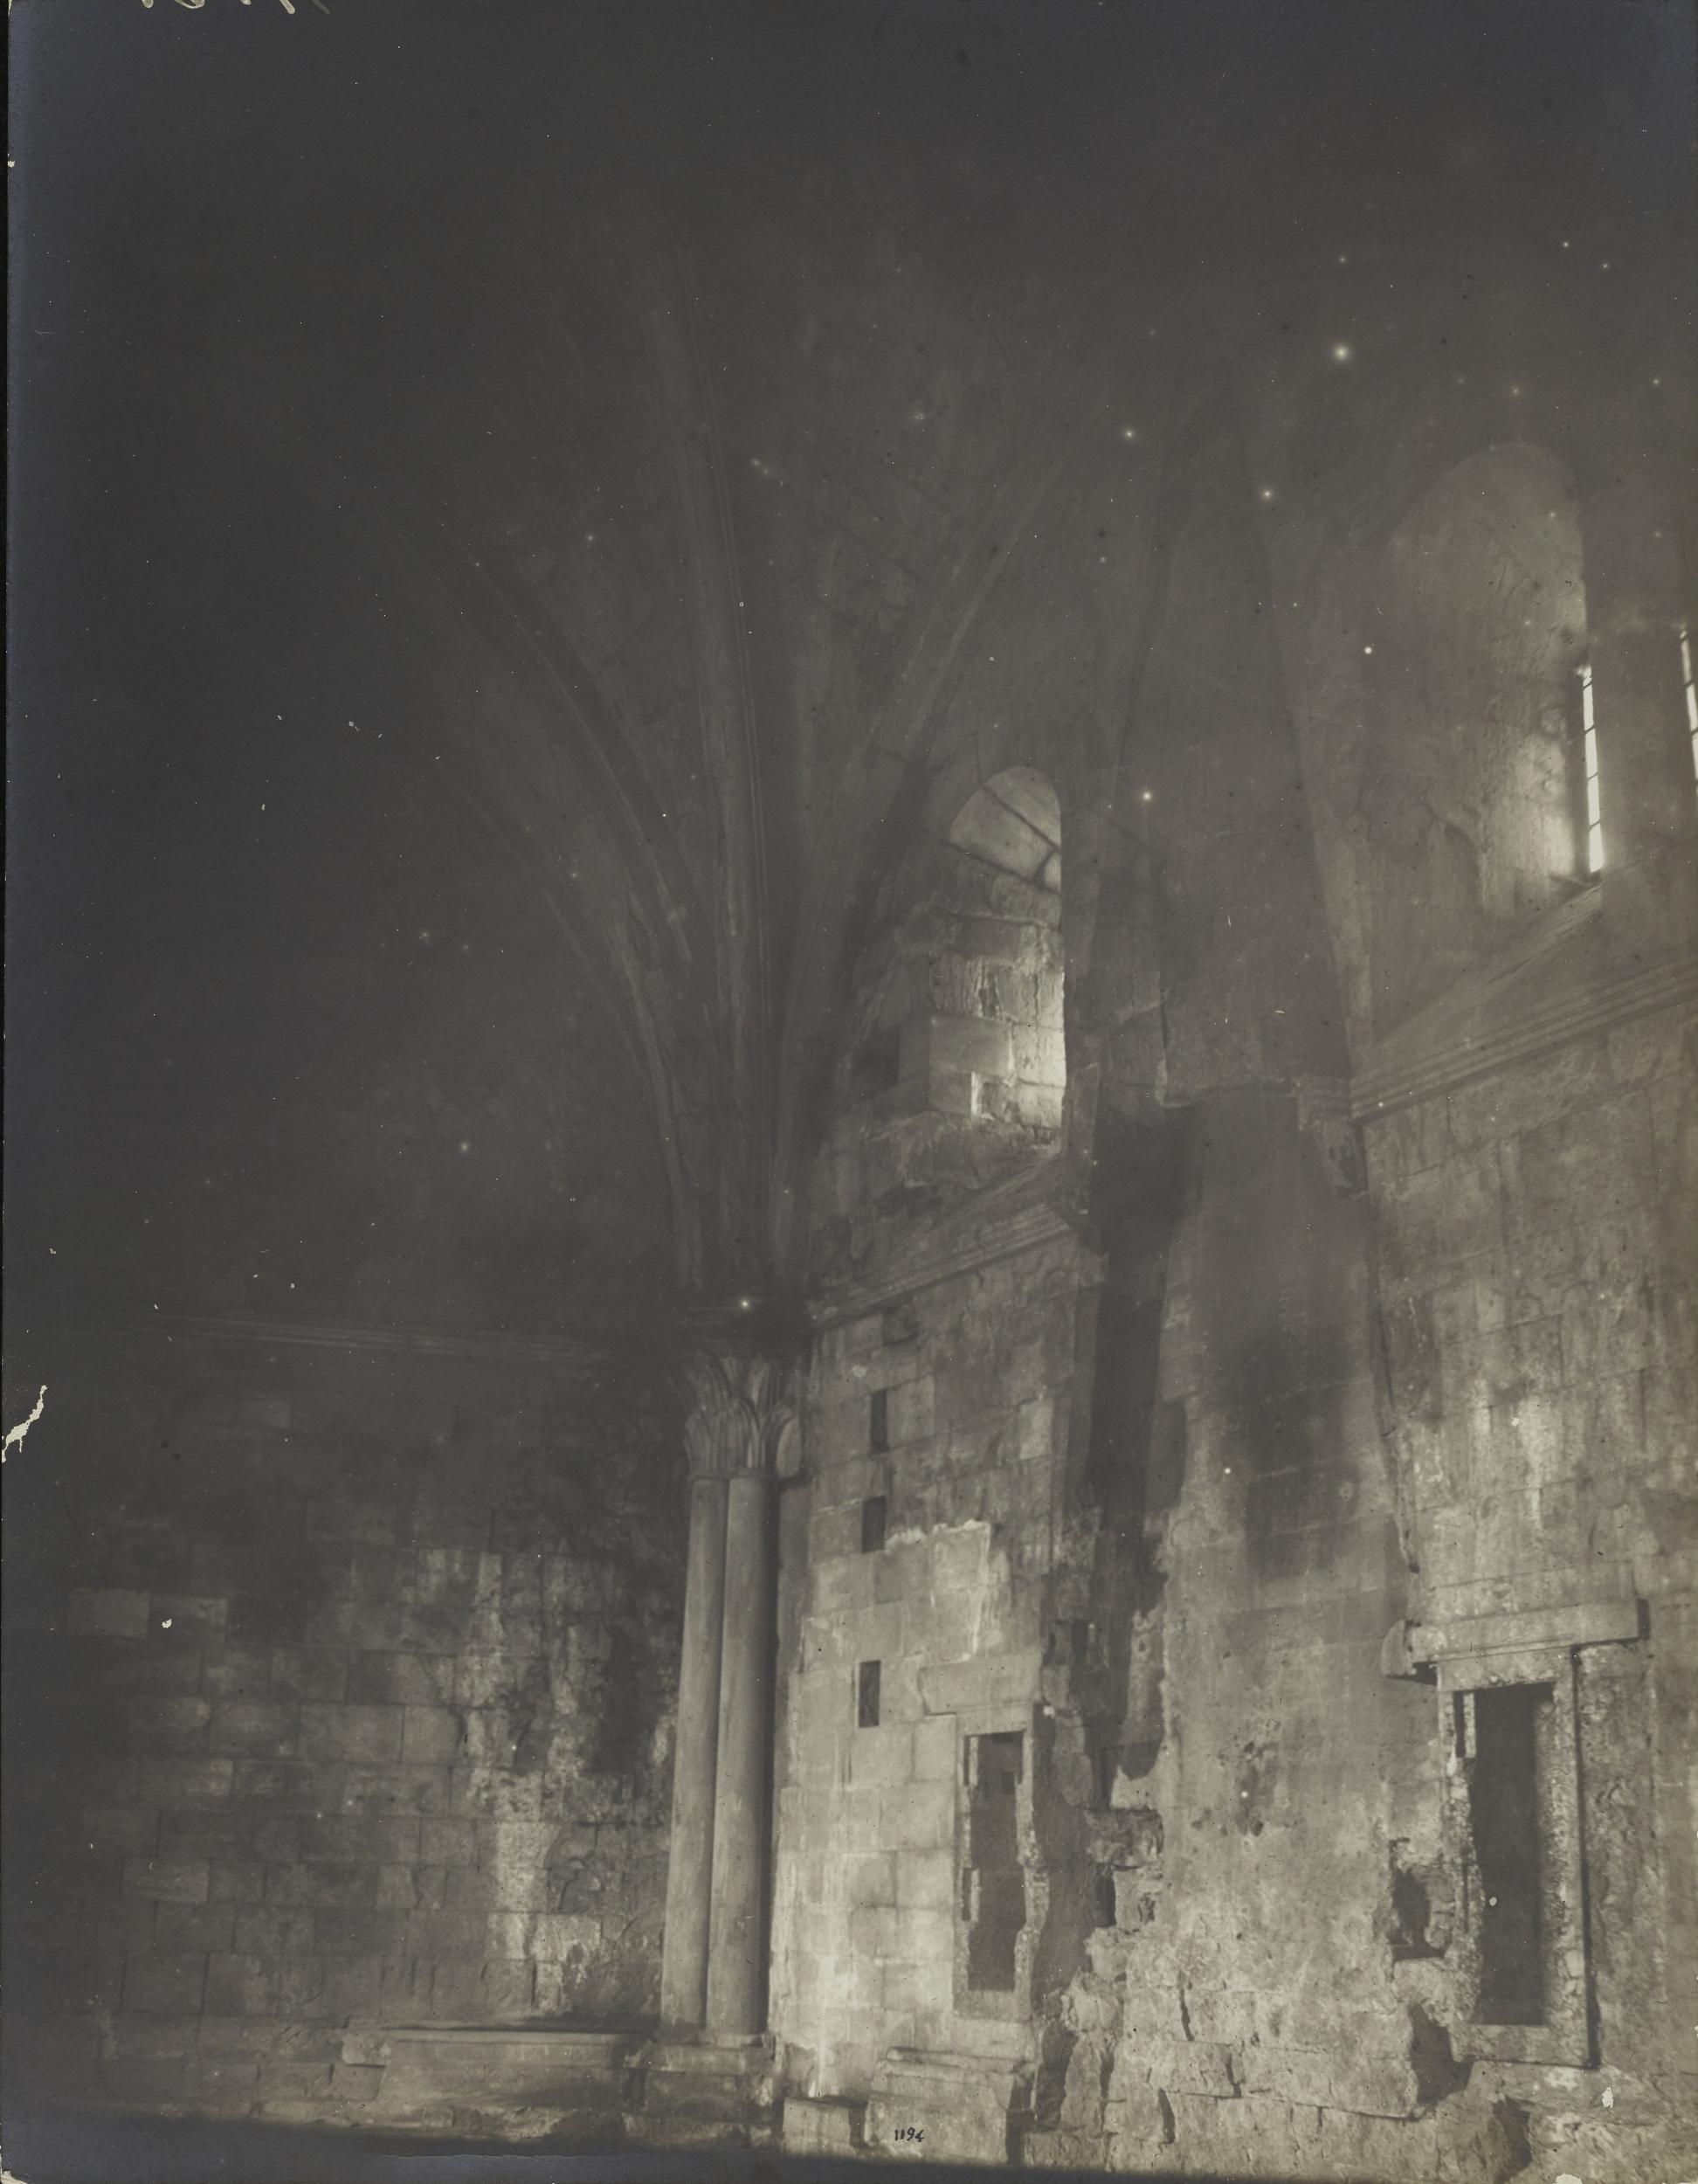 Fotografo non identificato, Andria - Castel del Monte - Camino, 1951-2000, gelatina ai sali d'argento/carta, MPI6016736